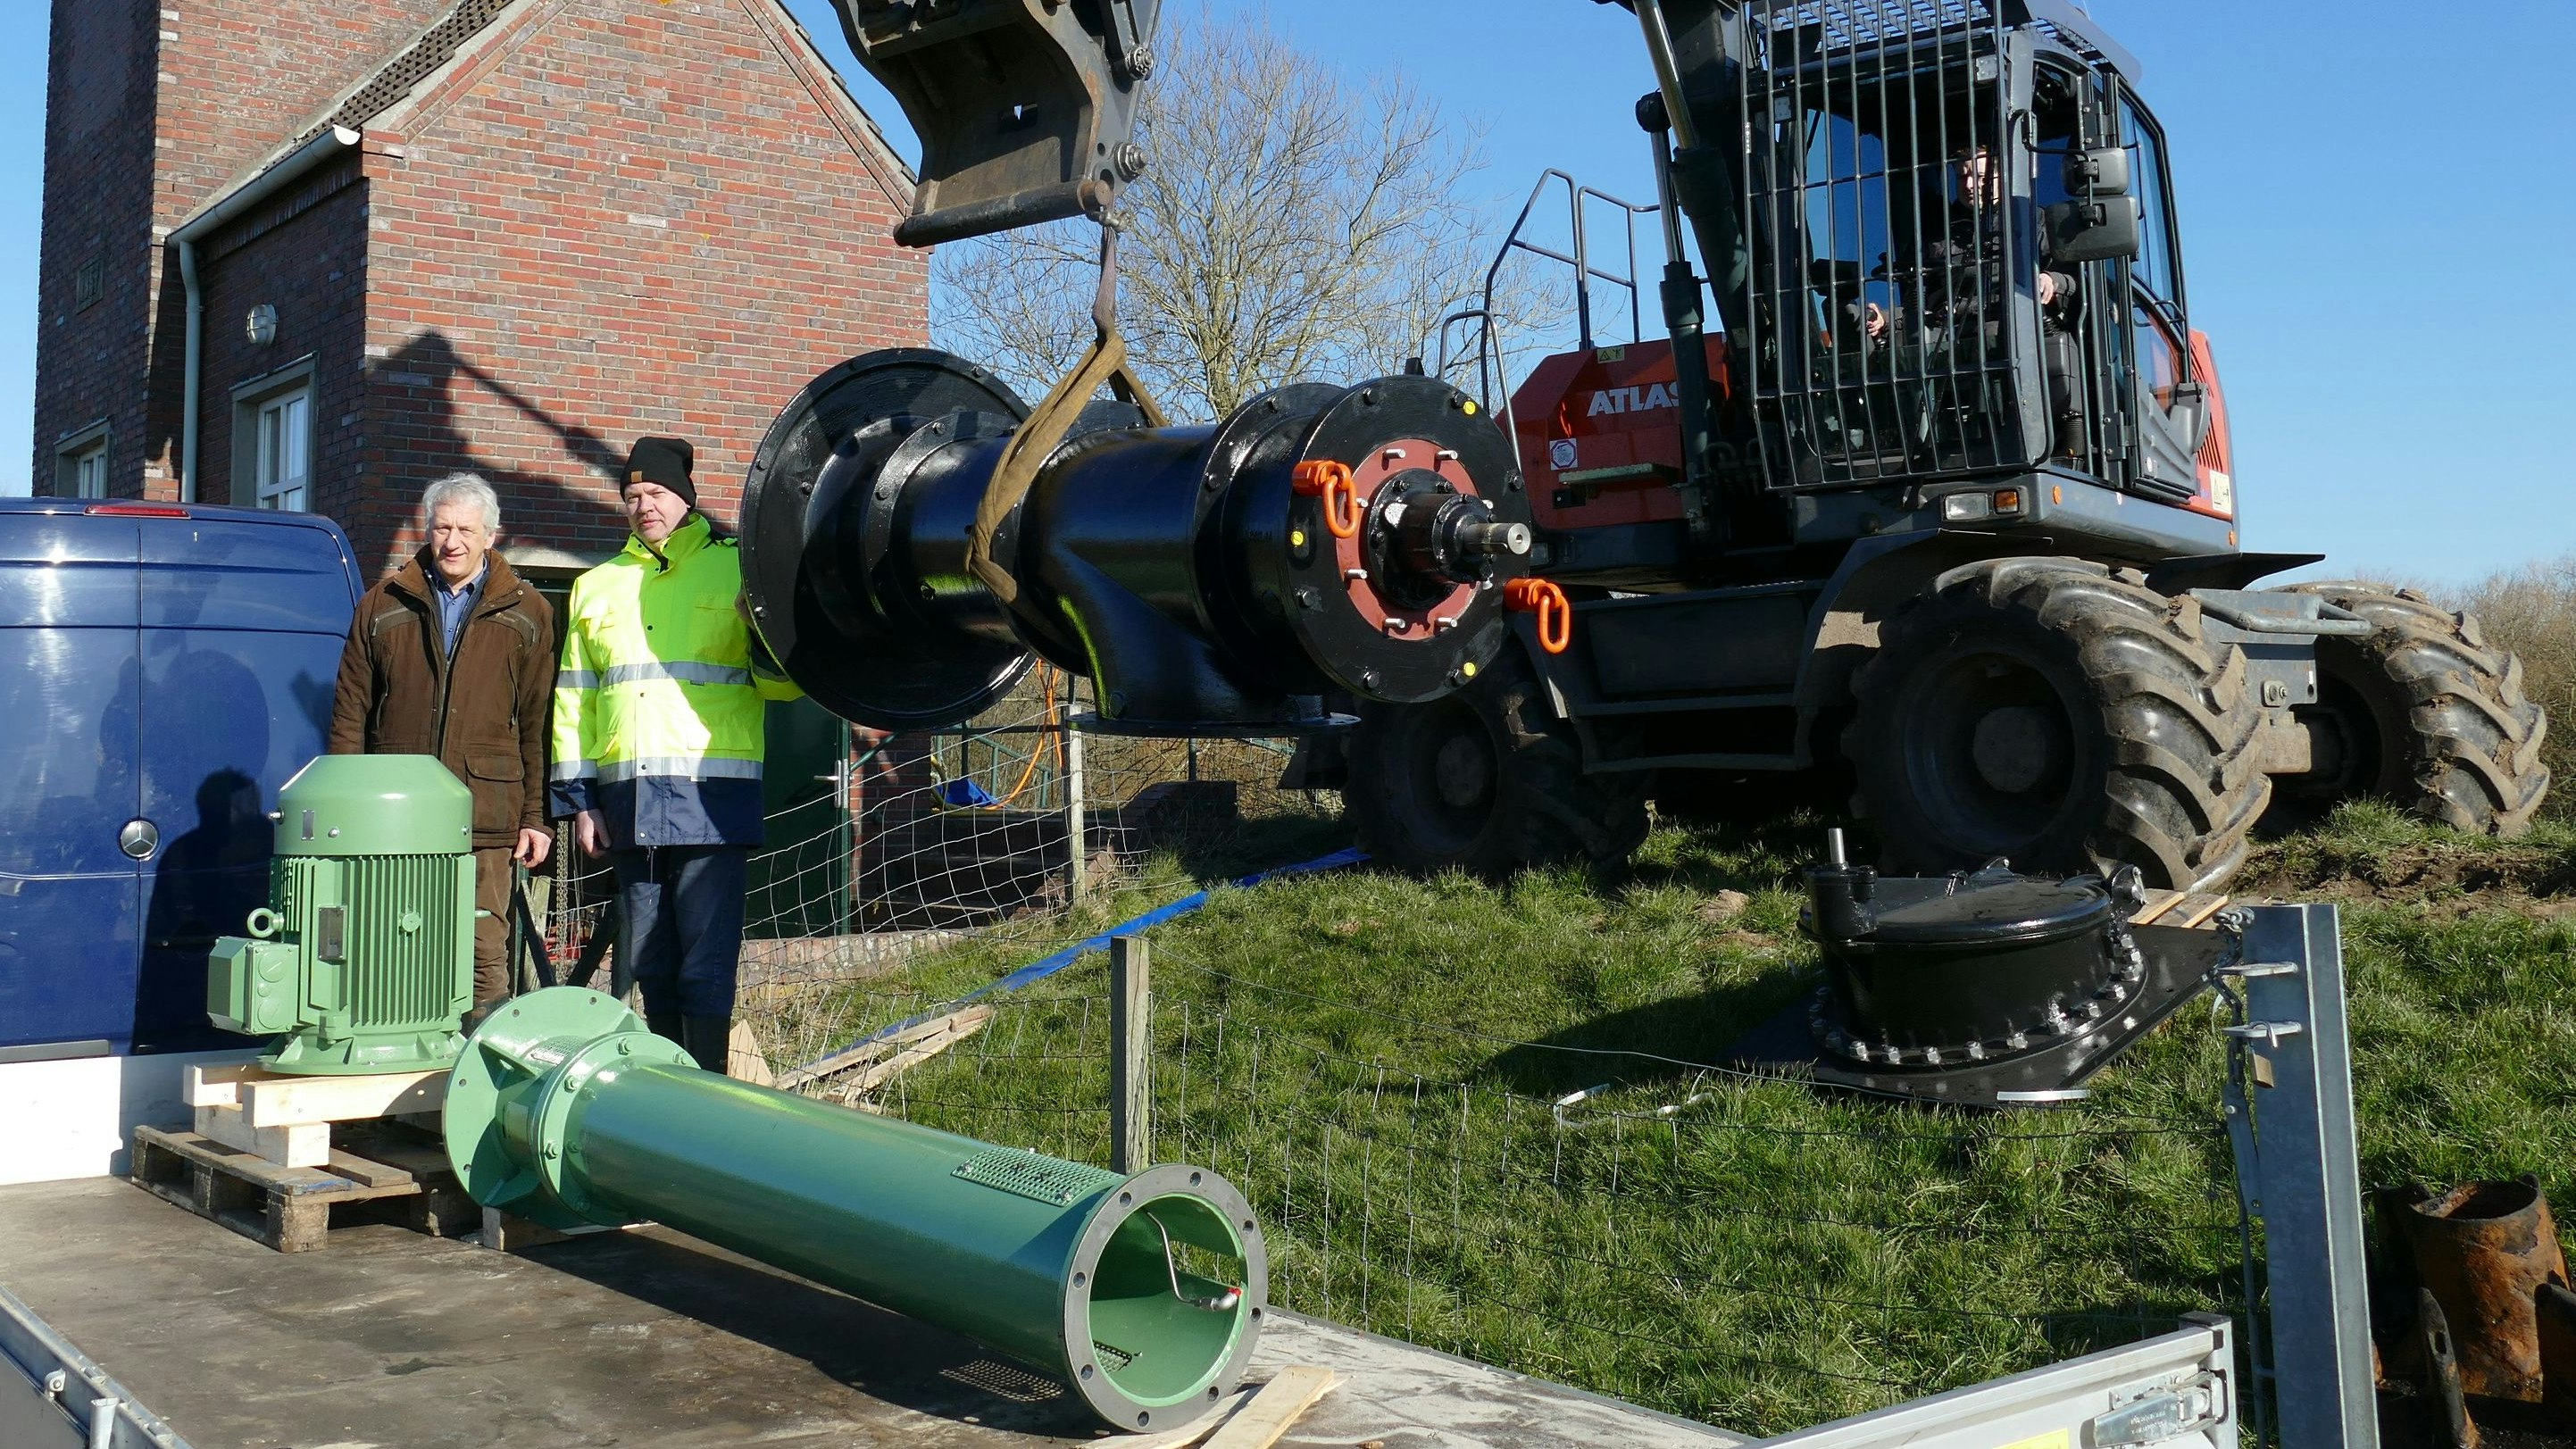 Sonderanfertigung: Martin Windhaus (links) und Norbert Schulte begutachten das neue, 2 Tonnen schwere Pumpsystem, das ins nördlichste Schöpfwerk der Friesoyther Wasseracht eingebaut wird.&nbsp; Foto: Stix